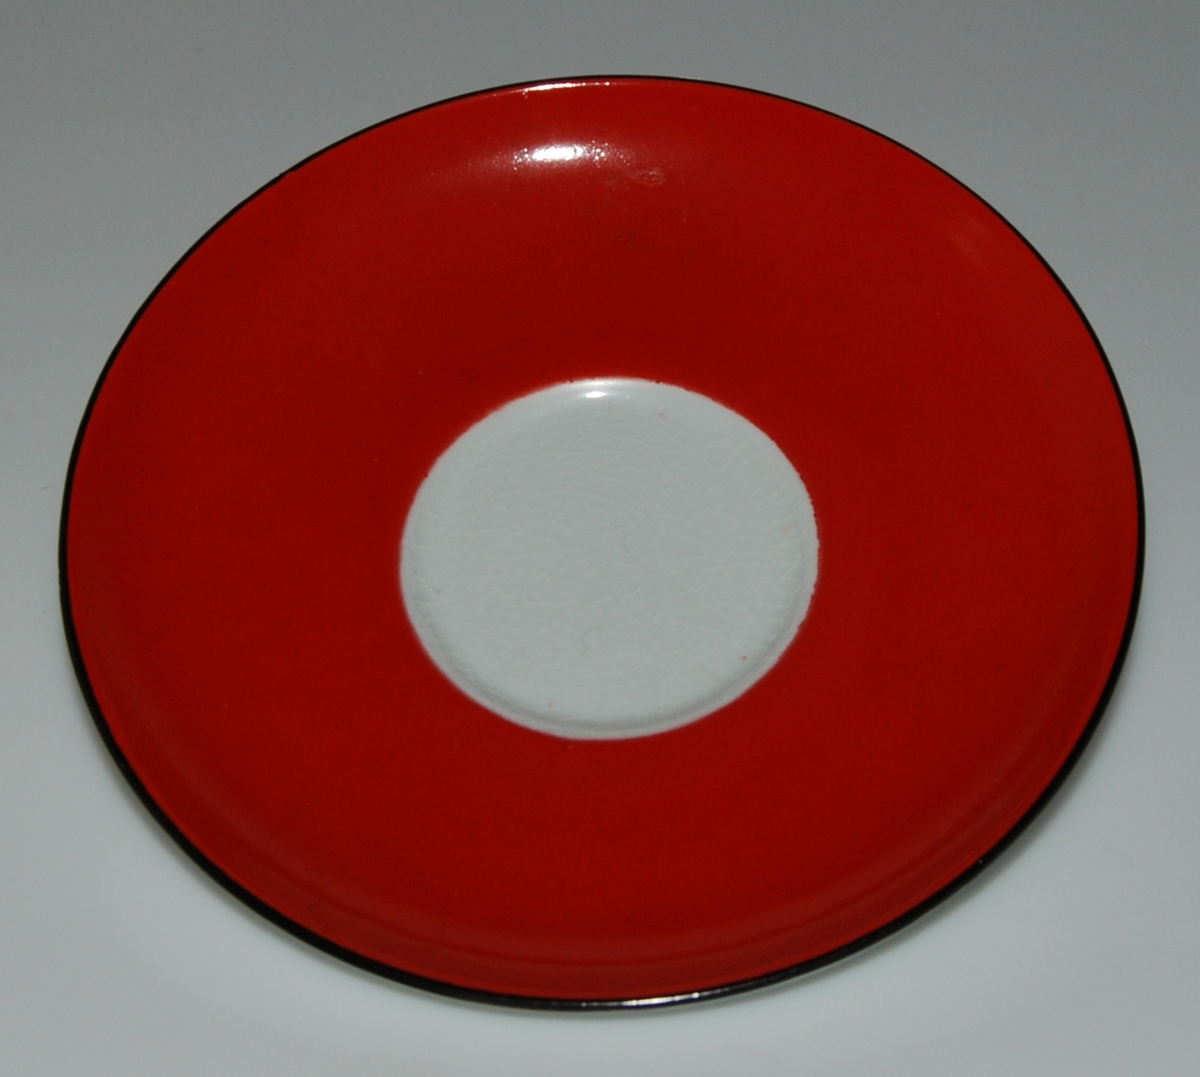 Tekopp med fat, röd glasyr med vita prickar samt två svarta linjer på insidan av koppens överkant. Okänd formgivare och dekoratör. Kan vara inspiration till den senare (1949-57) av Helmer Ringström skapade dekoren Amanita.